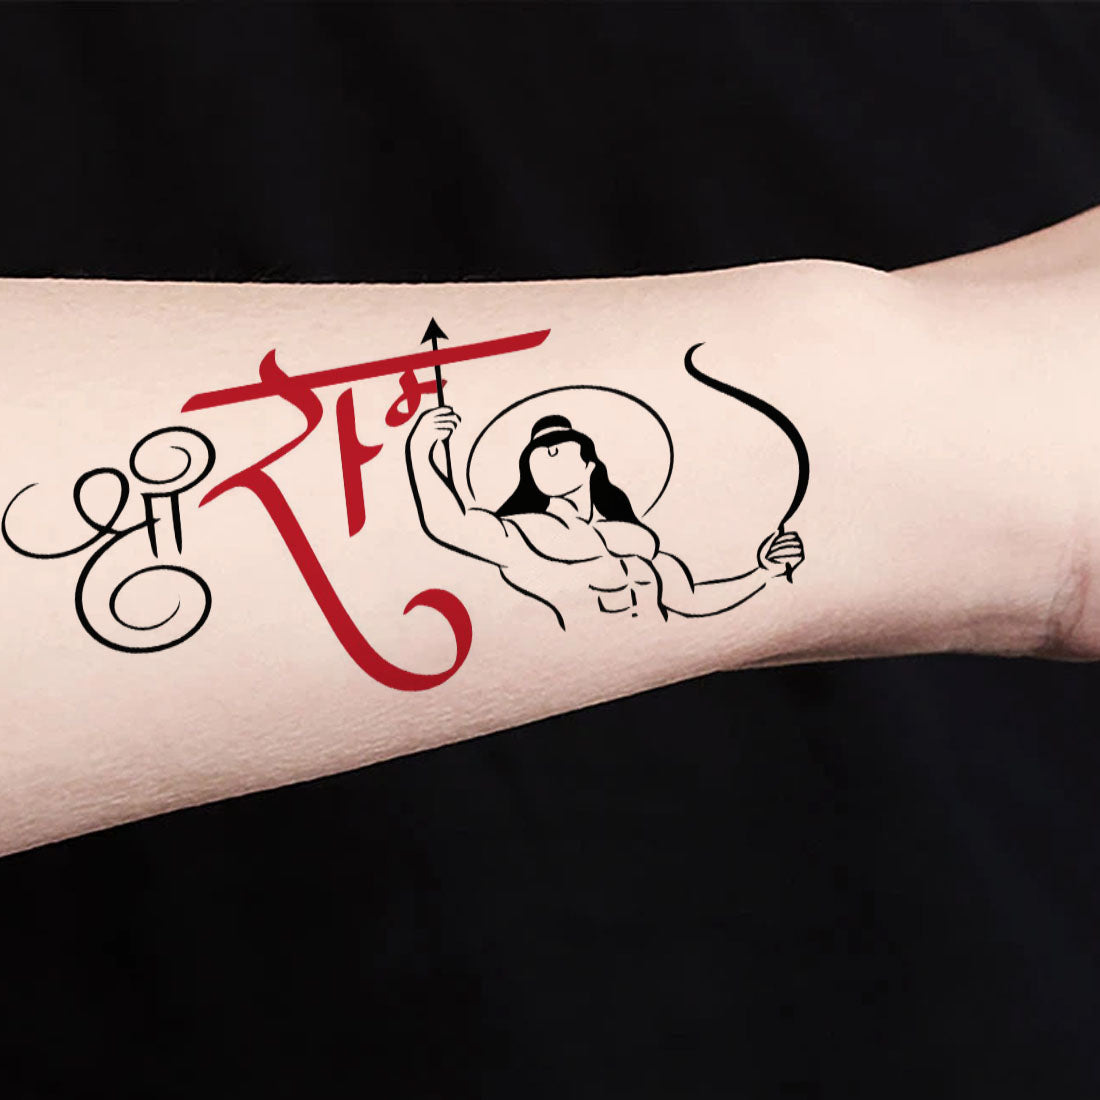 Ram tattoo |Shree ram tattoo |Ram tattoo ideas |Lord ram tattoo | Tattoo  designs wrist, Tattoo designs, Name tattoo